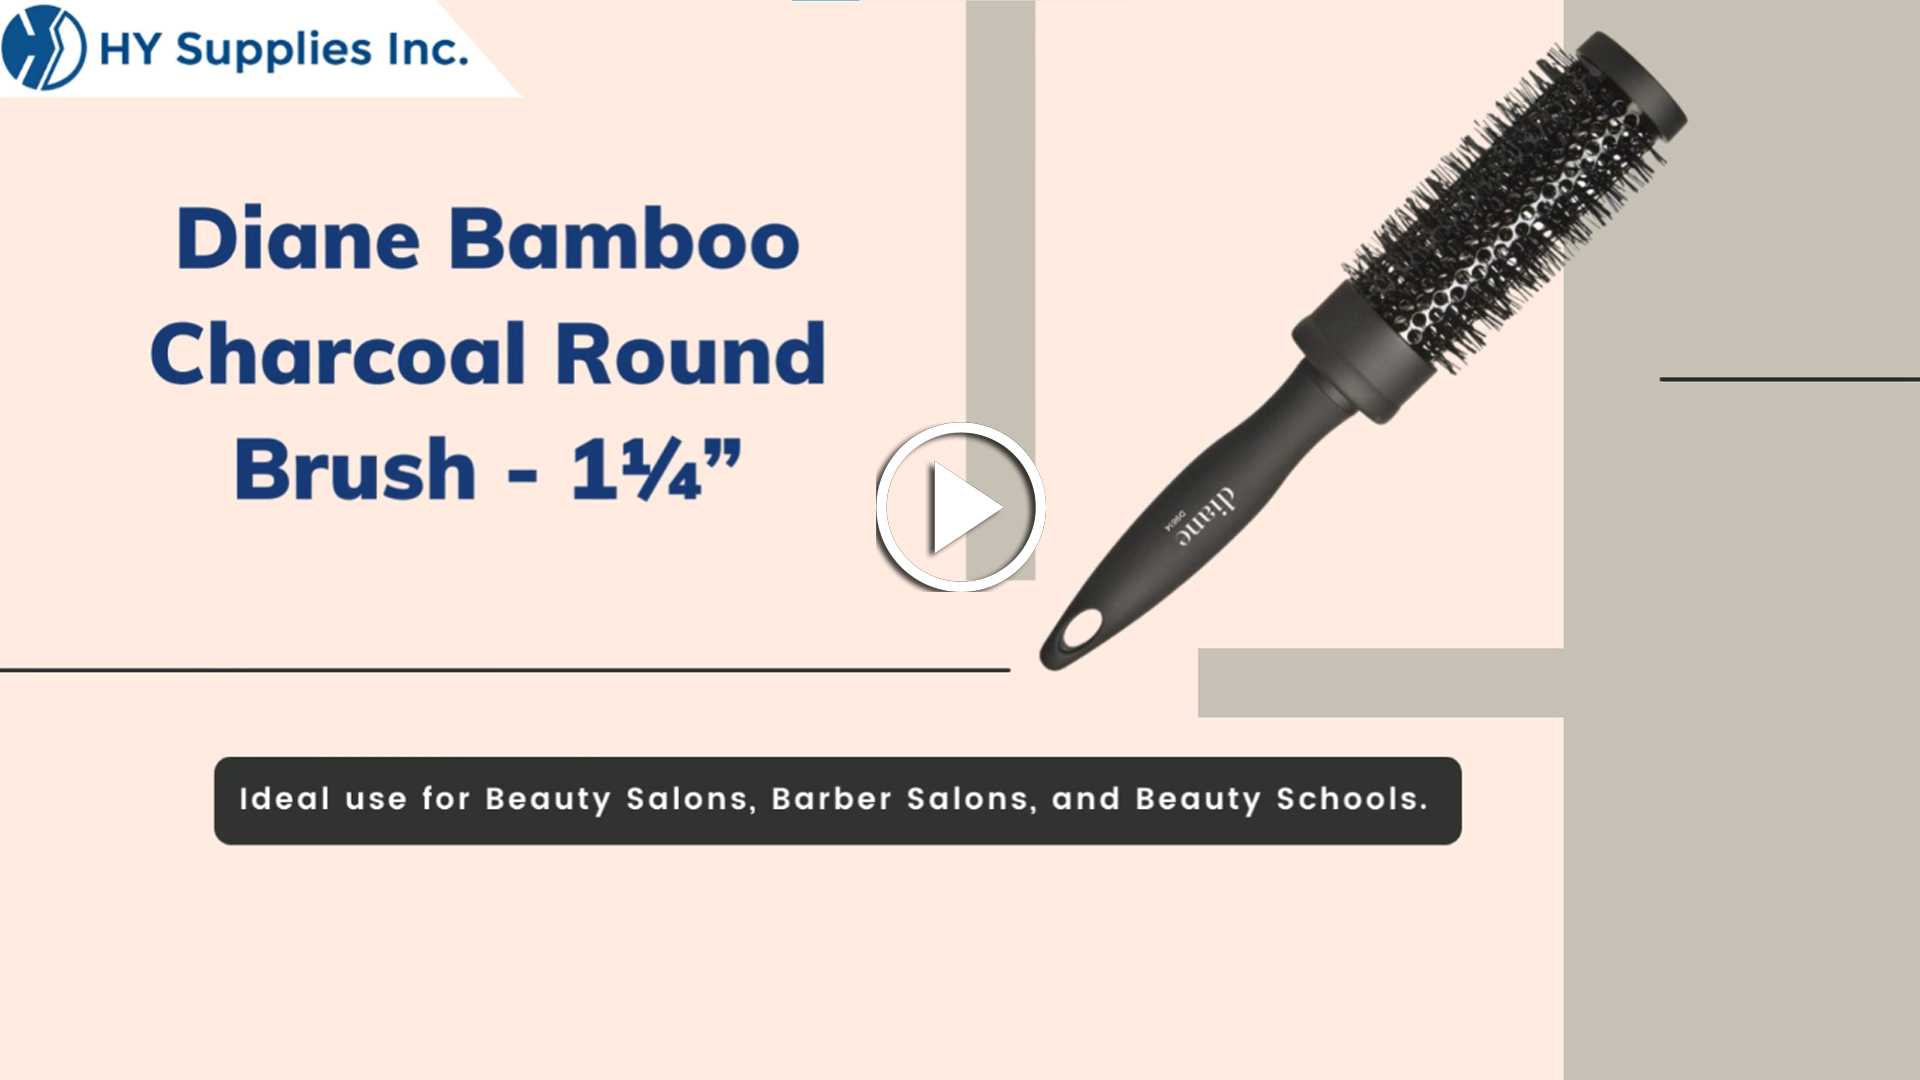 Diane Bamboo Charcoal Round Brush - 1¼”